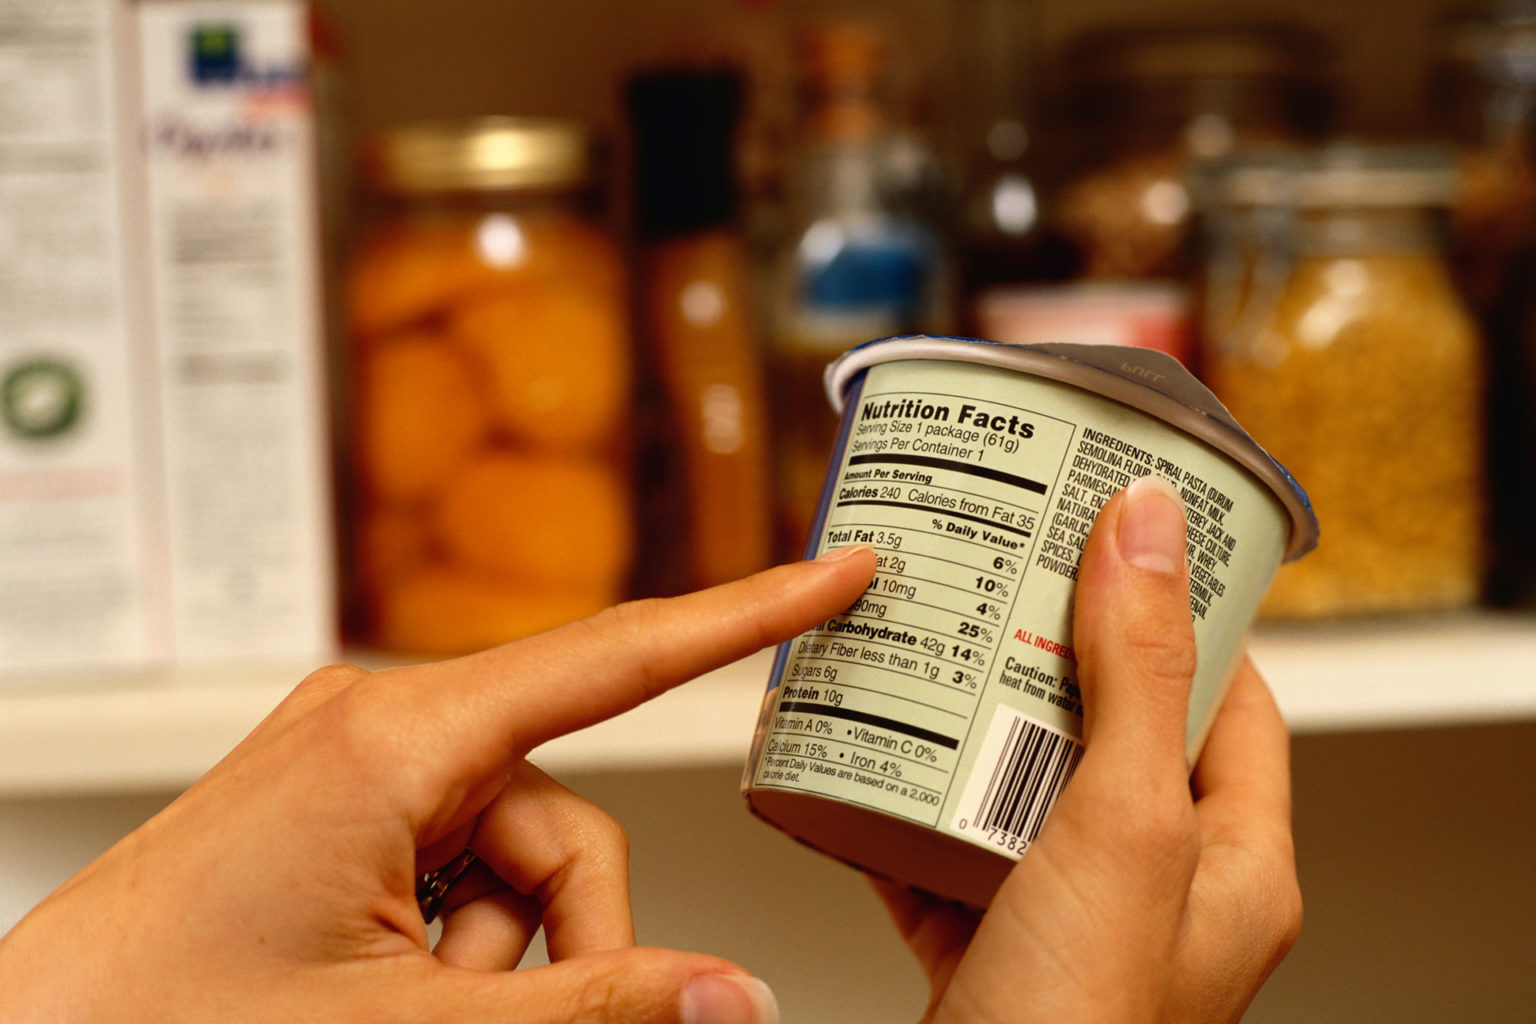 L’importanza dell’etichettatura e delle informazioni nutrizionali nella scelta dei prodotti alimentari